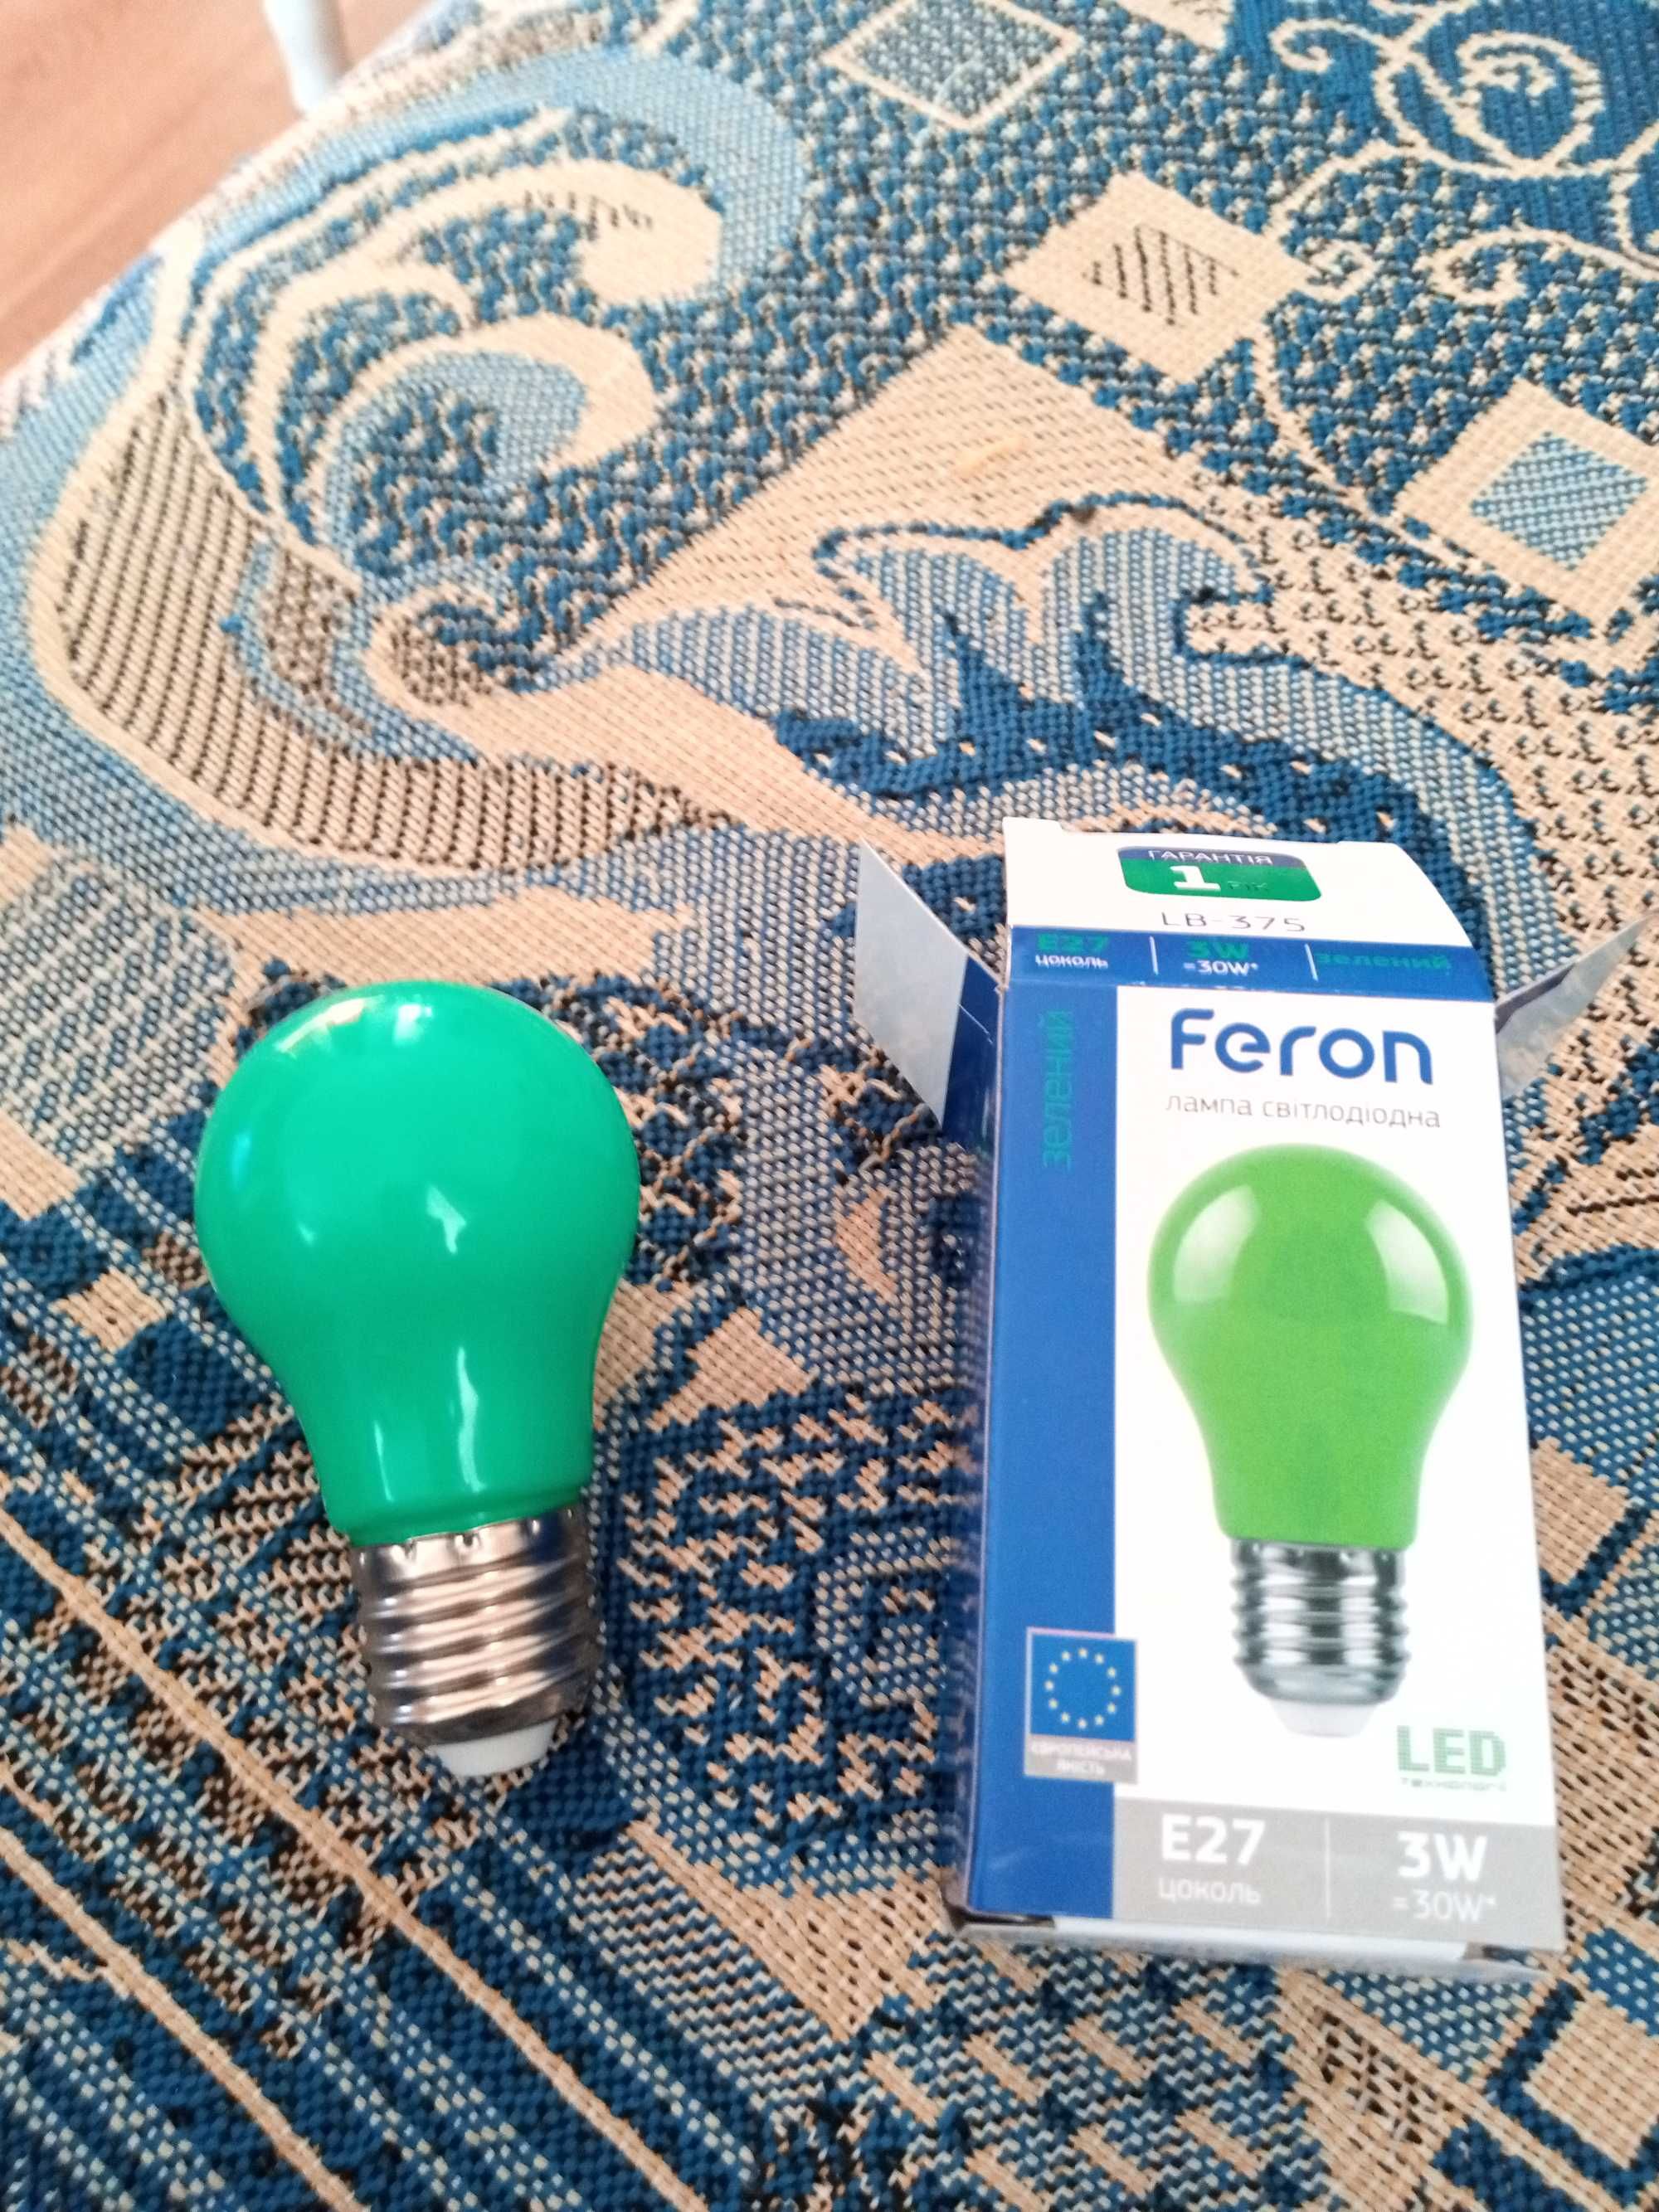 Продам новую светодиодную лампочку,зелёного цвета.